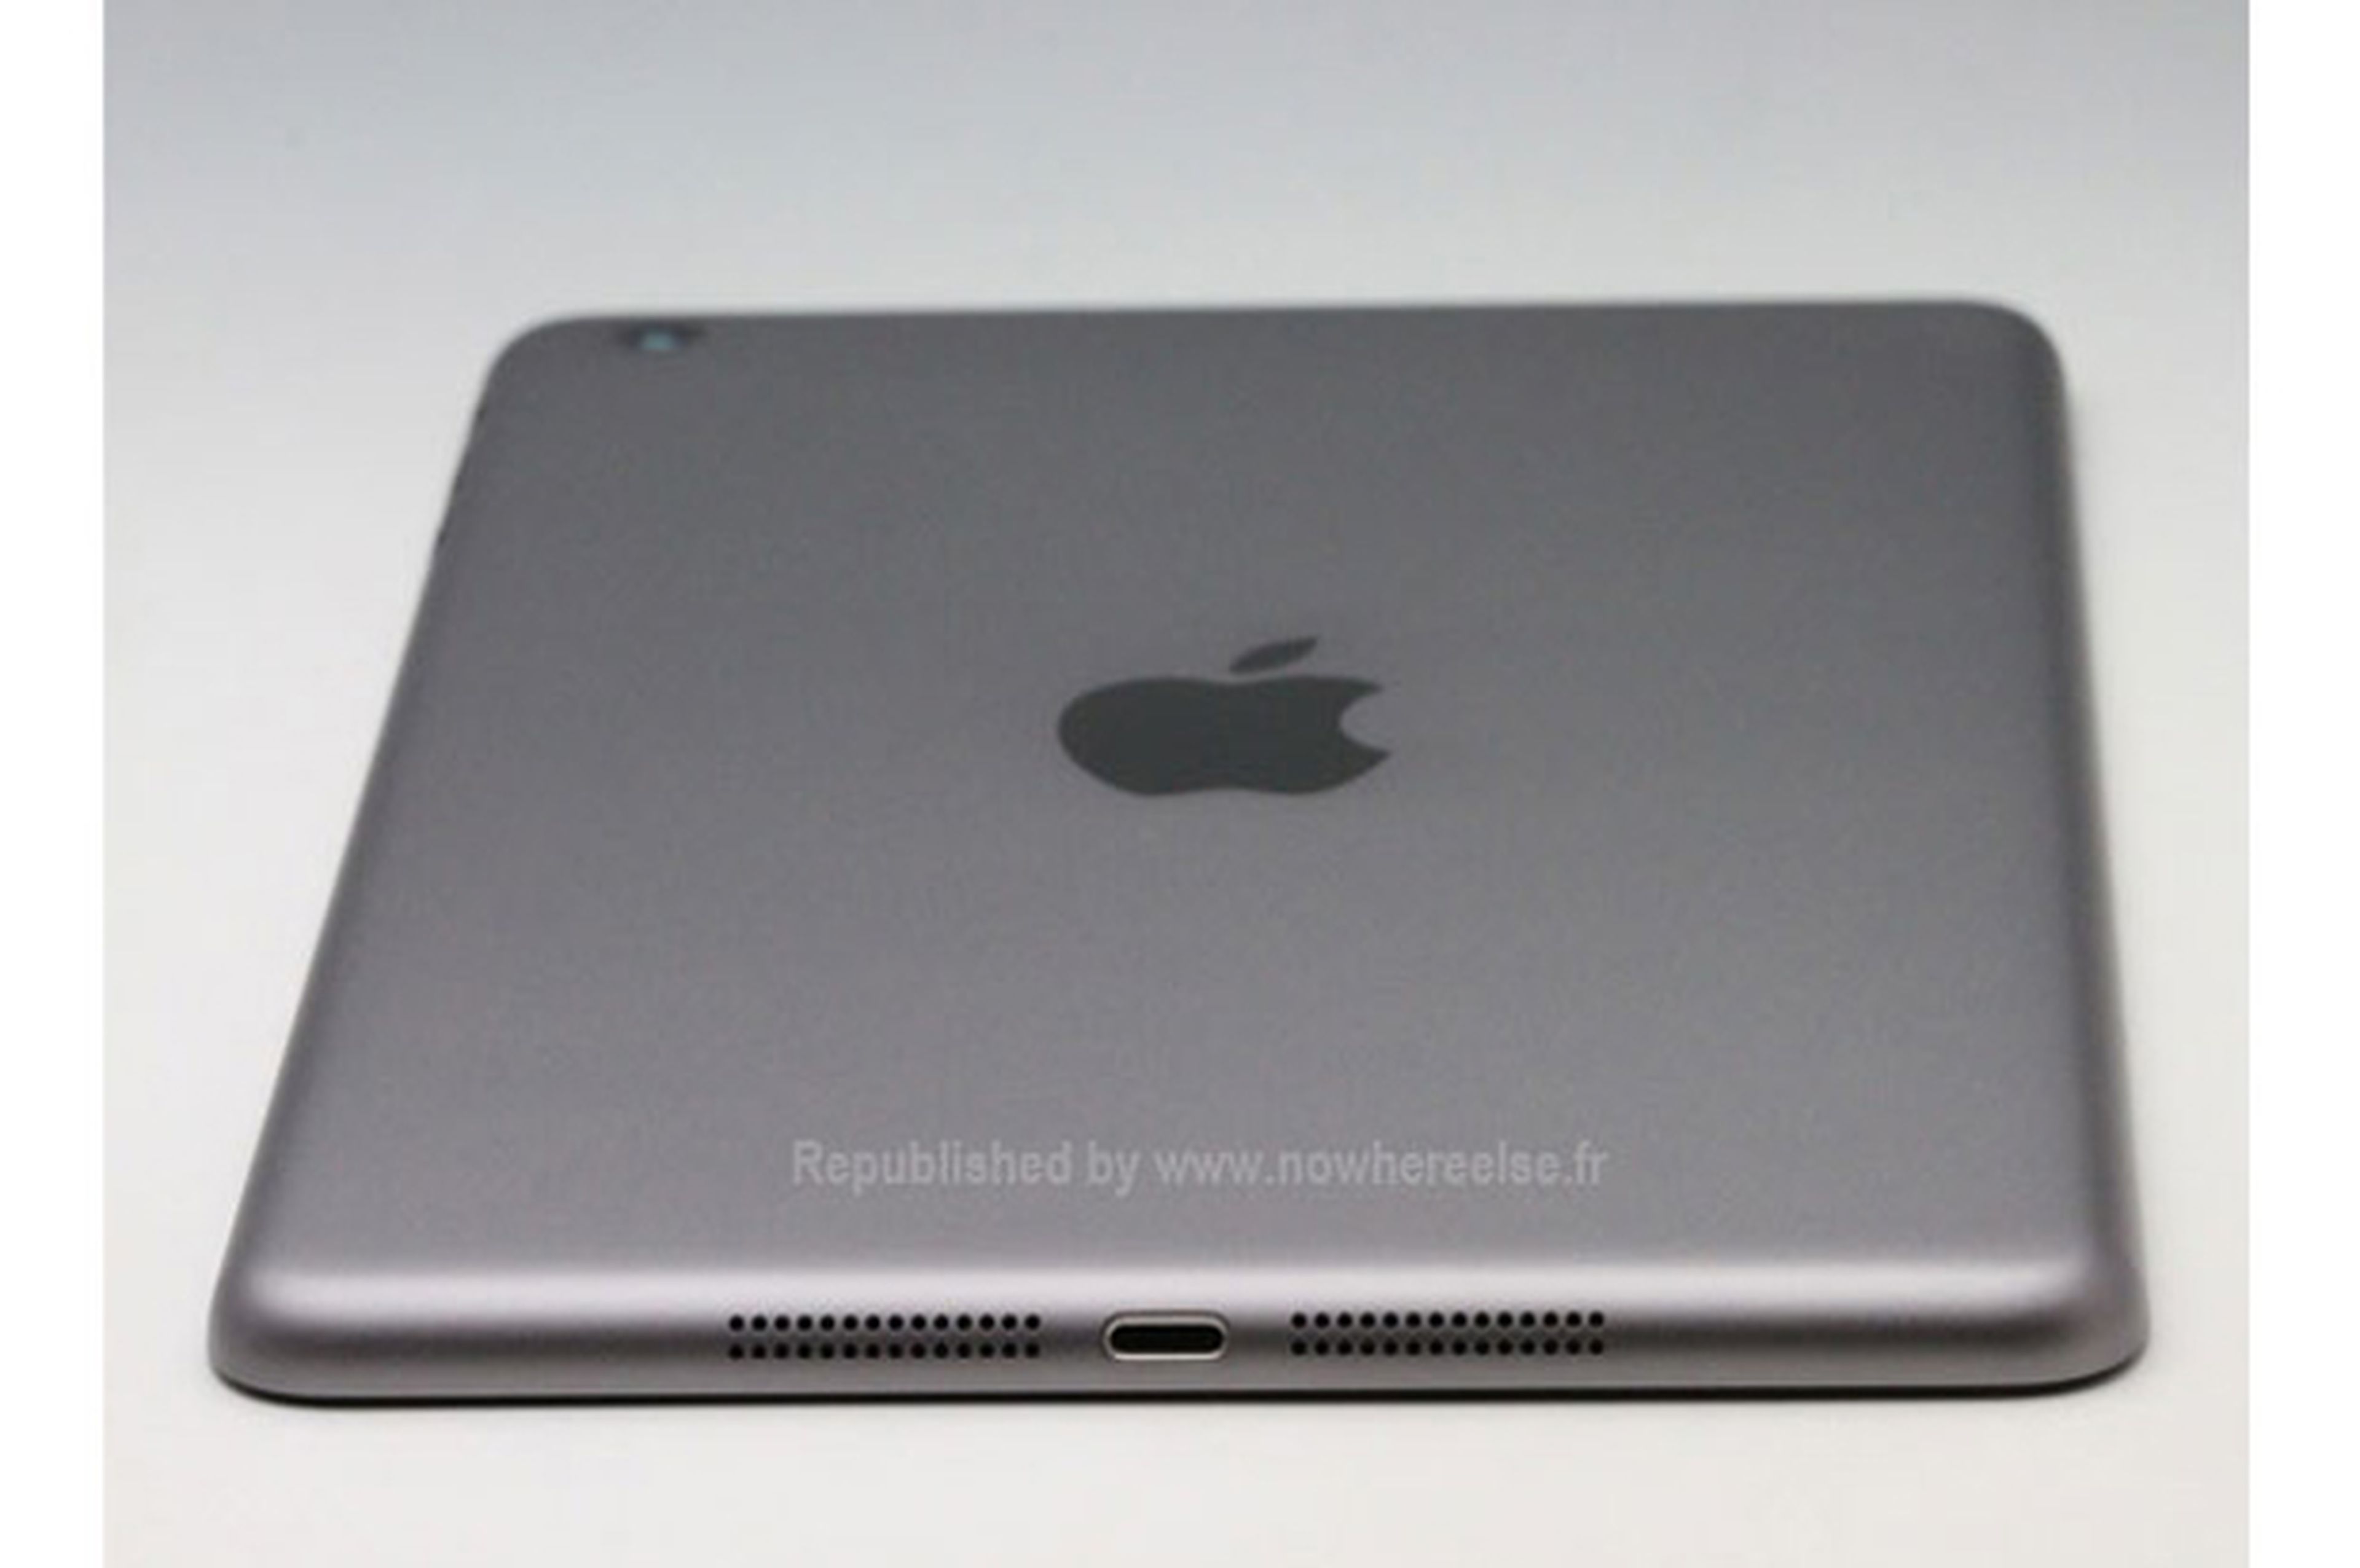 iPad Mini 2 aparecerá en color gris espacial